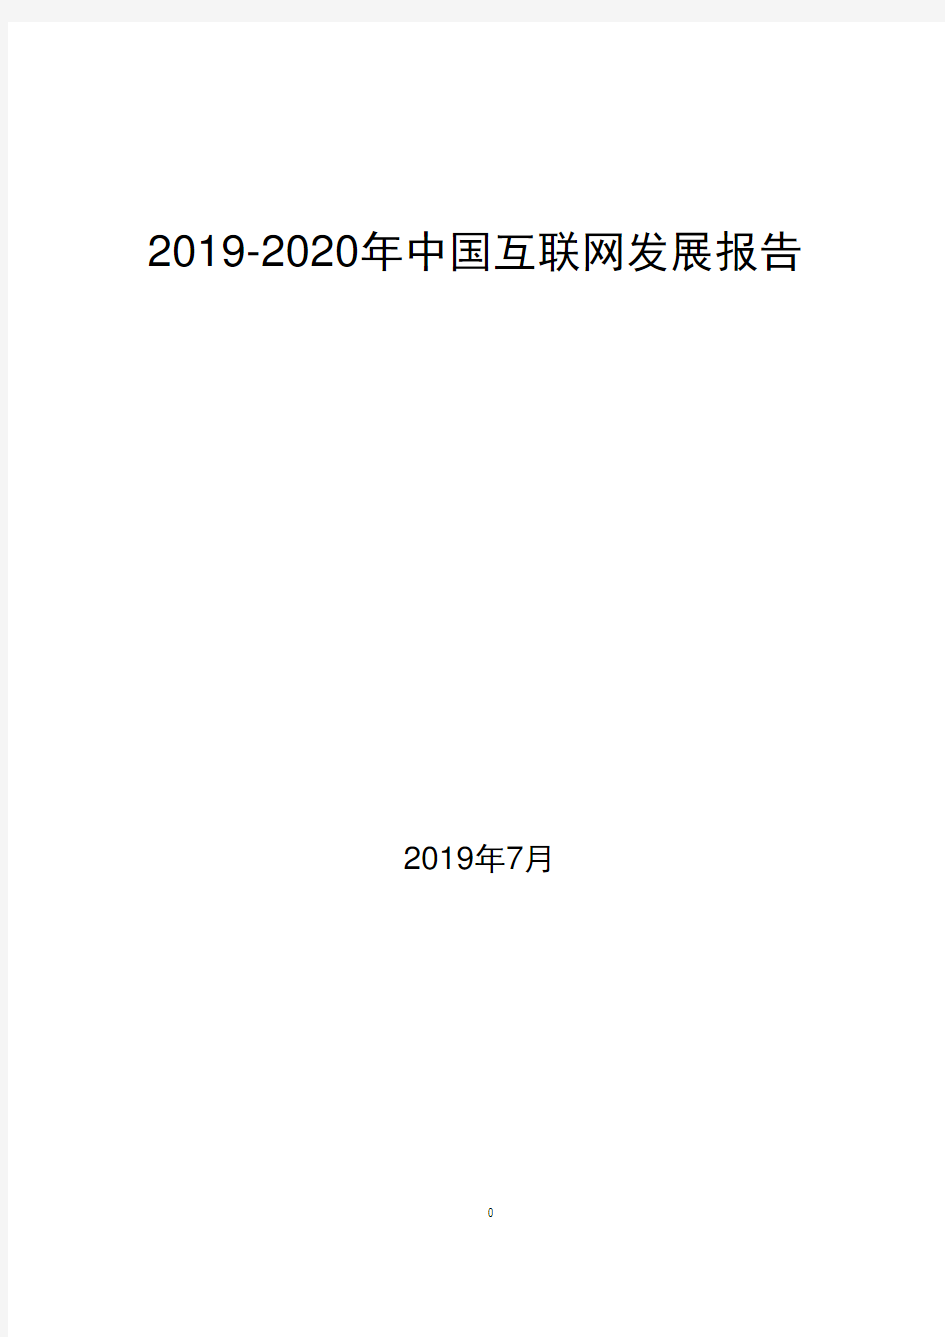 2019-2020中国互联网发展报告